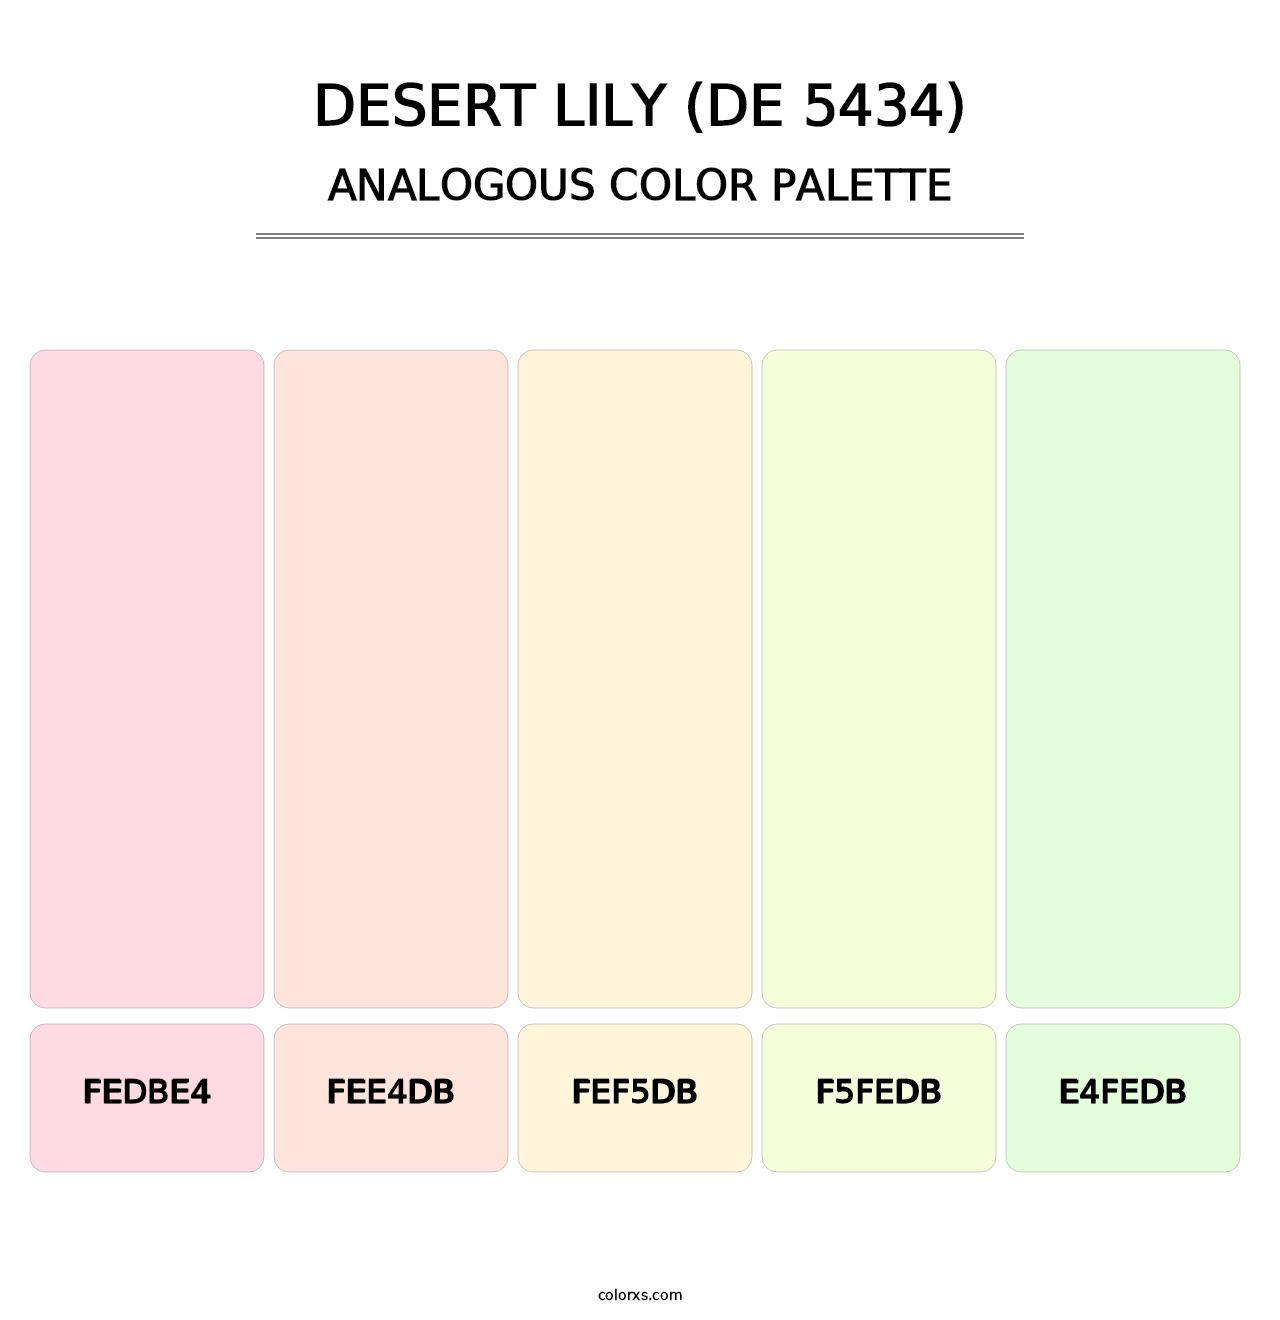 Desert Lily (DE 5434) - Analogous Color Palette